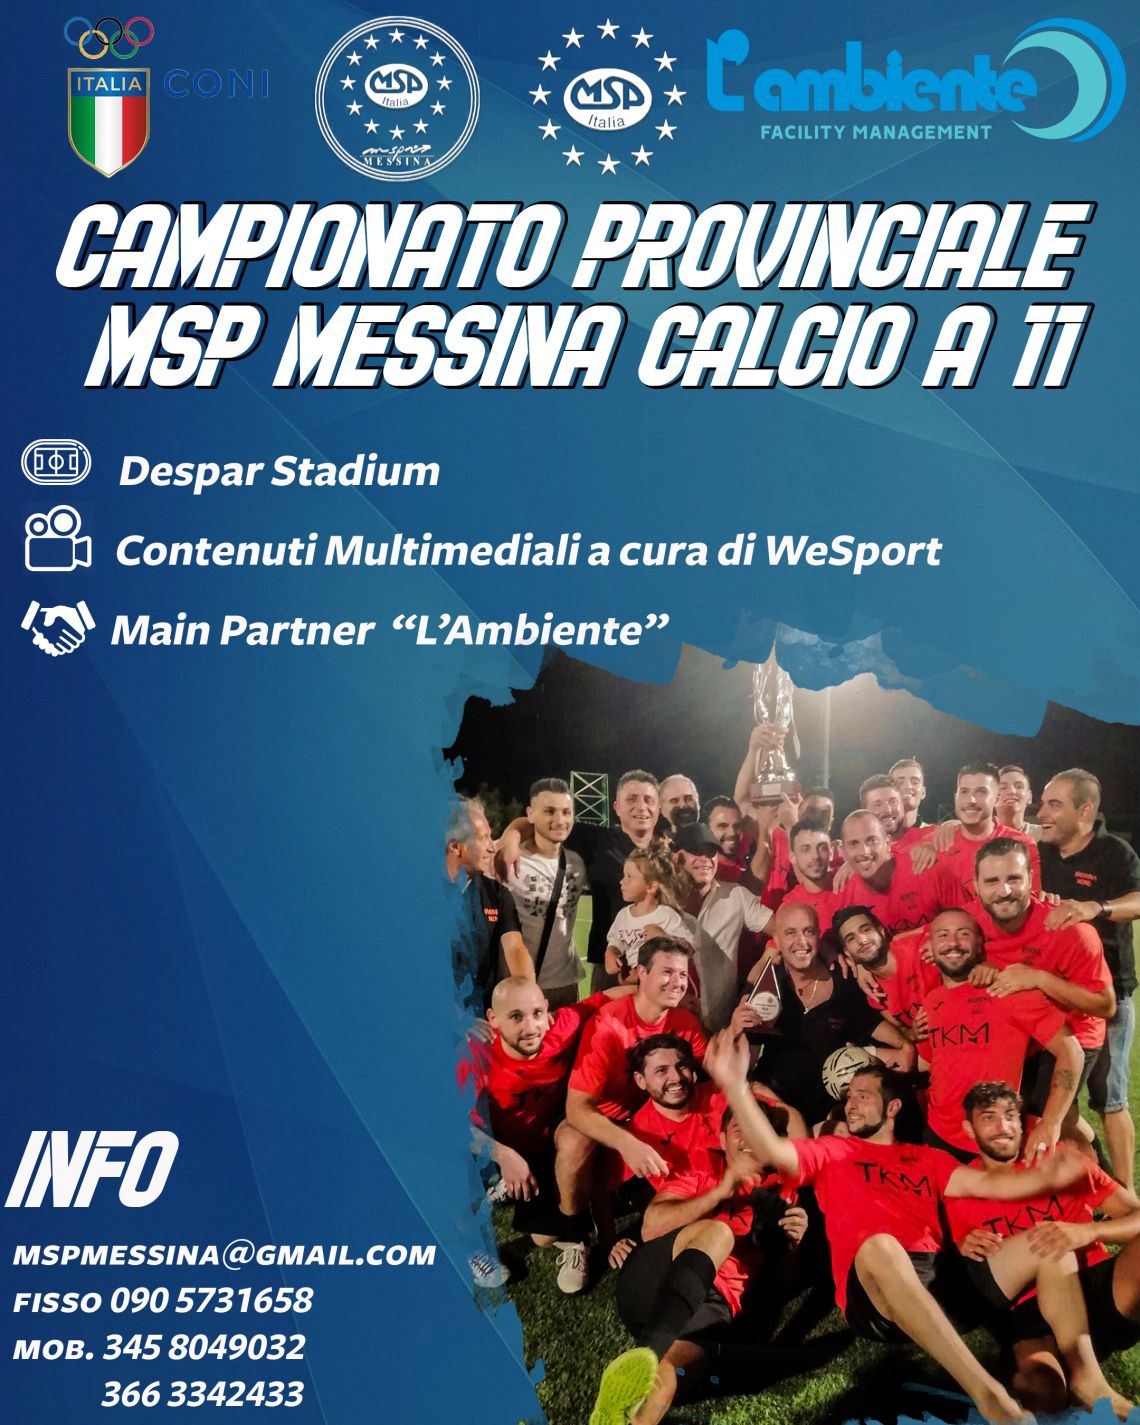 Campionato Calcio a 11 - MSP